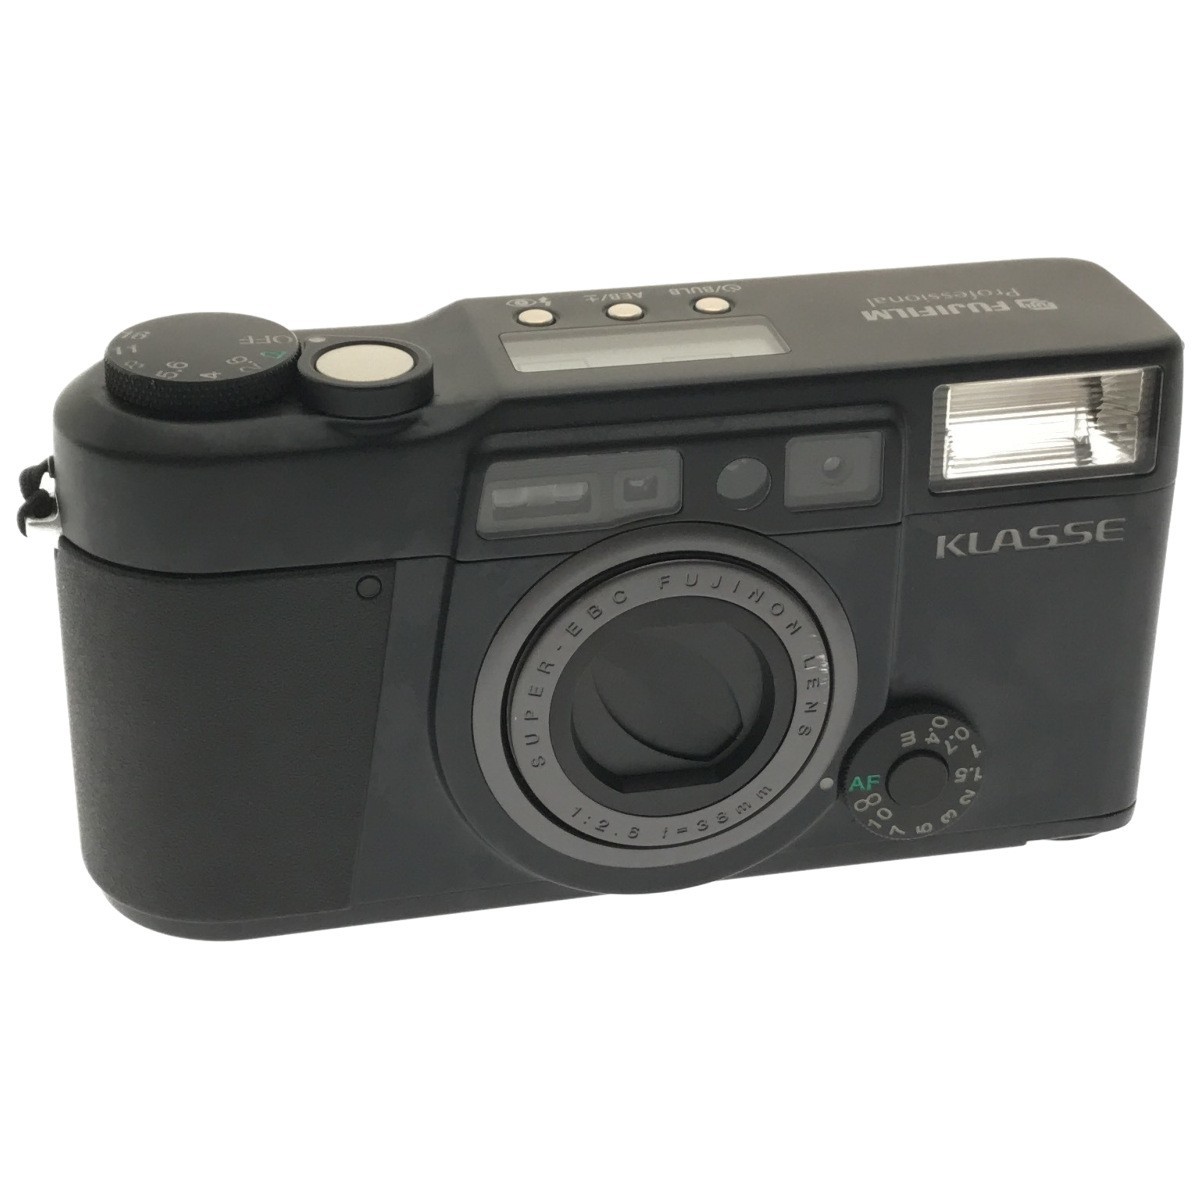 フジフィルム 高級コンパクトカメラ クラッセ ブラック 単焦点 美品-